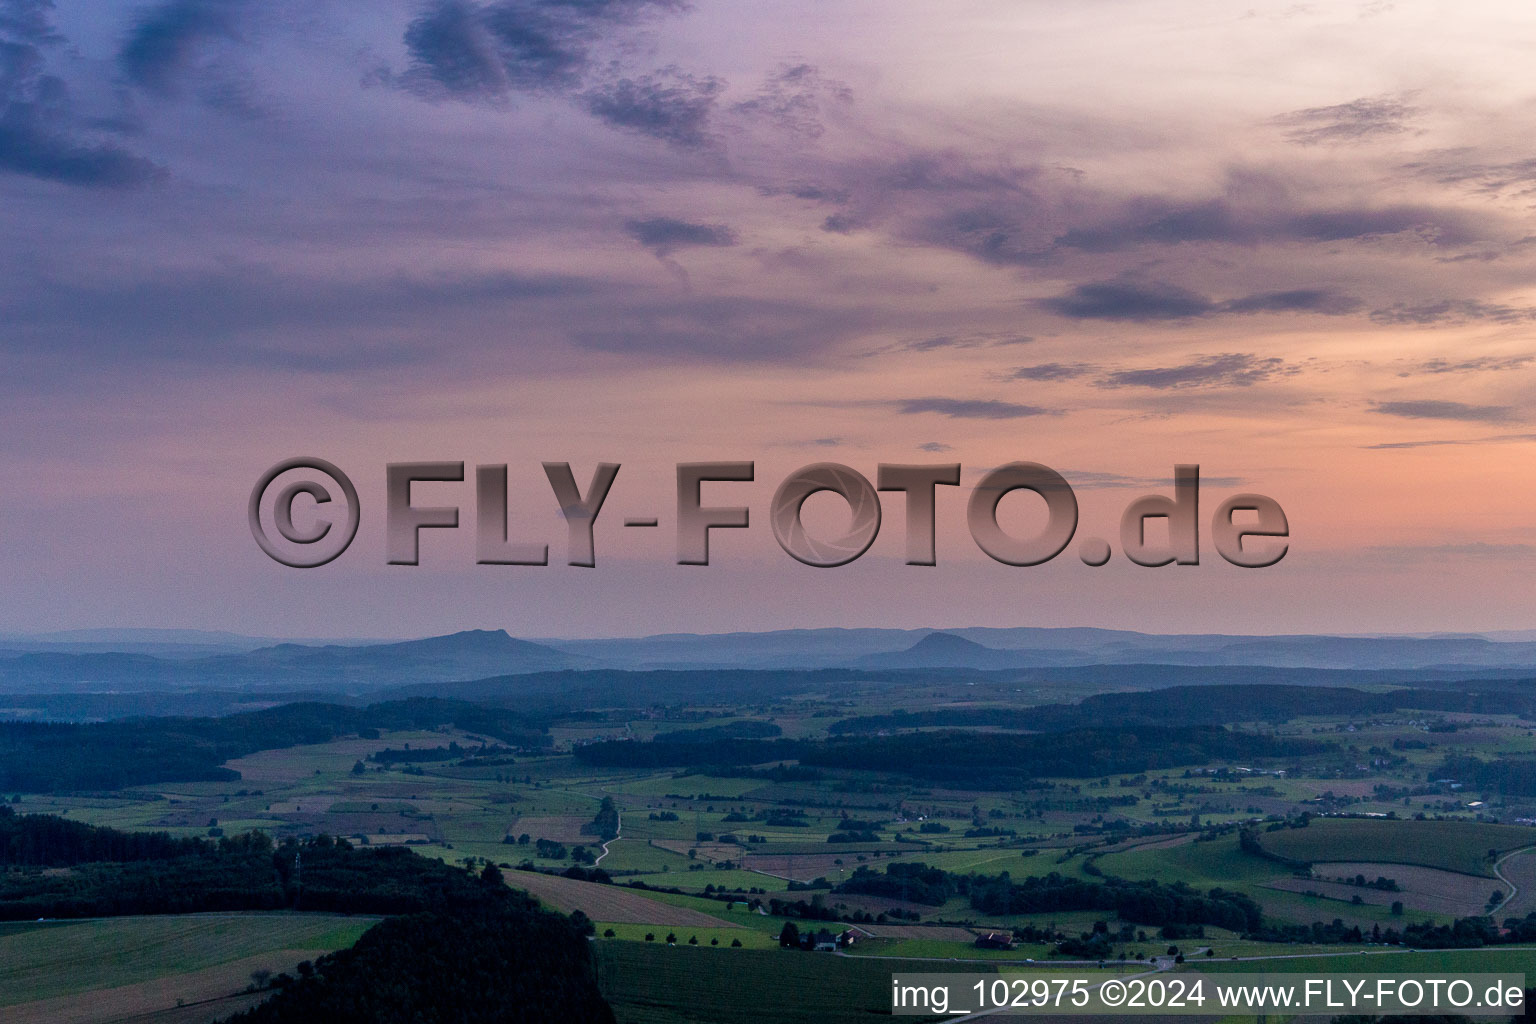 Vulkan-Landschaft des Hegau bei Sonnenuntergang in Engen im Bundesland Baden-Württemberg, Deutschland